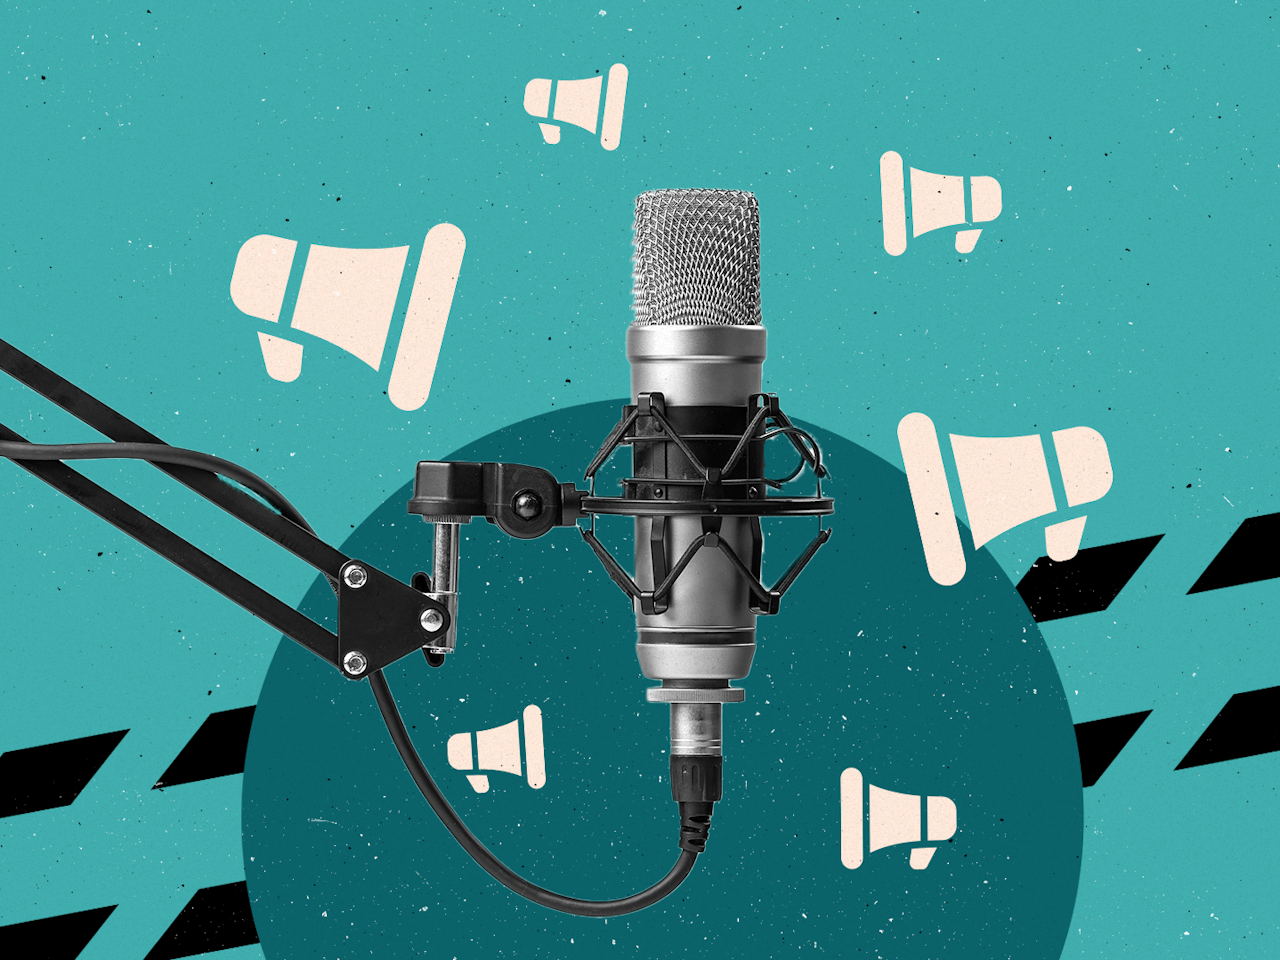 Met podcasts zijn de 'hardleerse' media net zo begonnen als destijds met de komst van internet, zegt DPG-directeur Erik van Gruijthuijsen: 'Eerst alles gratis weggeven.'